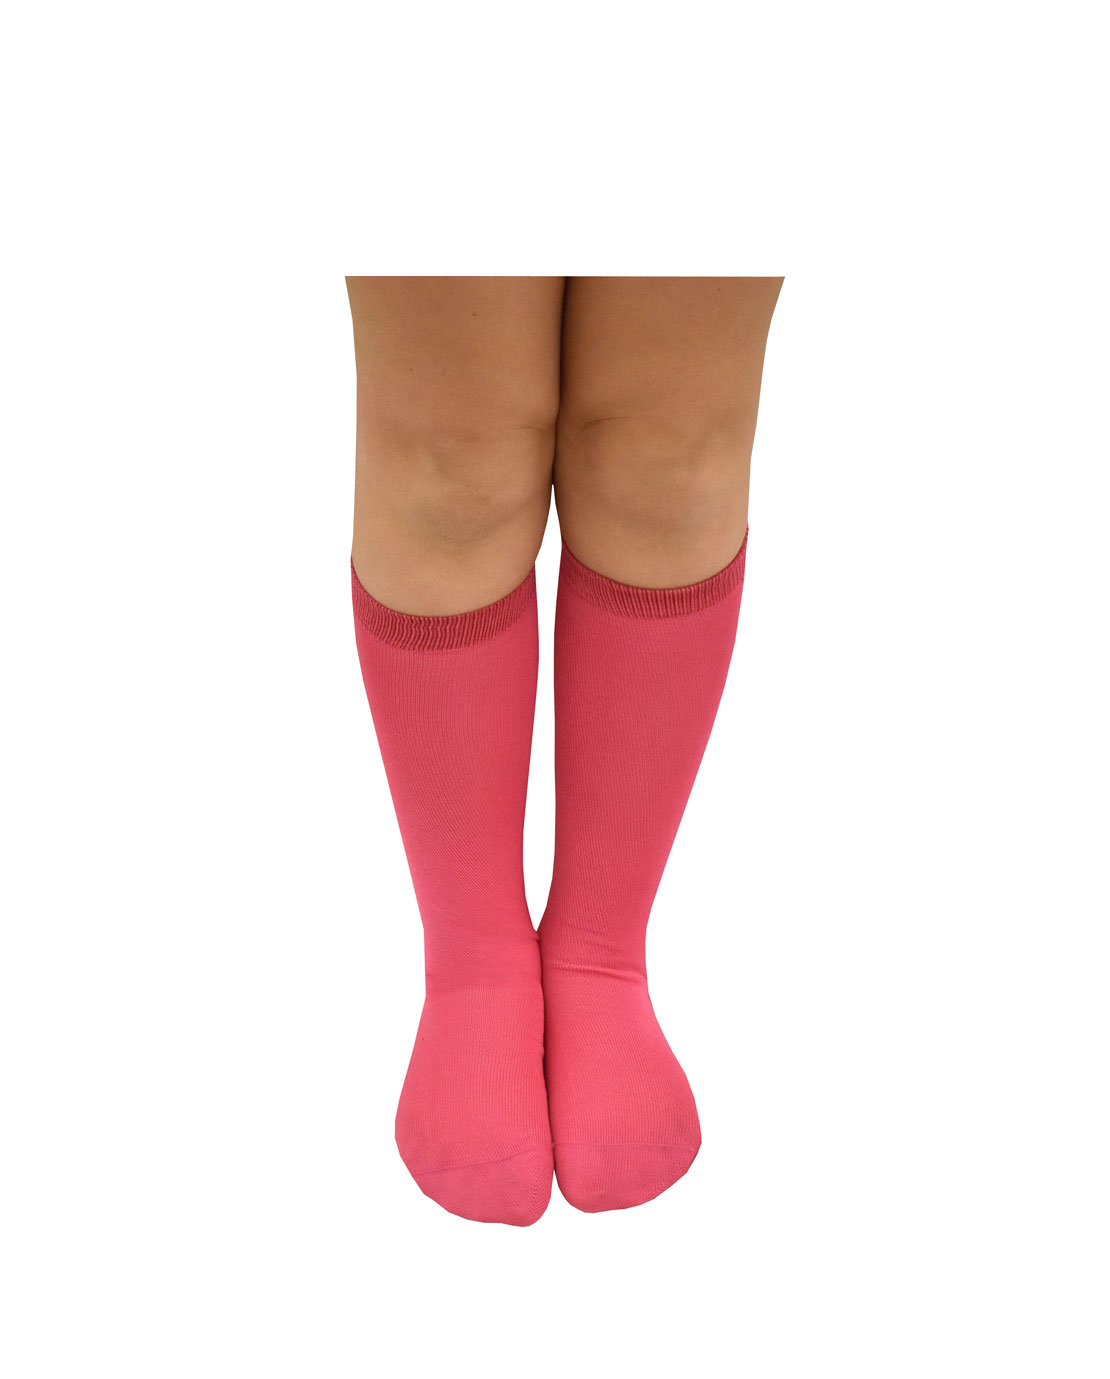 6 paia di calze lunghe bambina in cotone filo di scozia Mod. Unito –  Spedizione GRATUITA – BestCalze